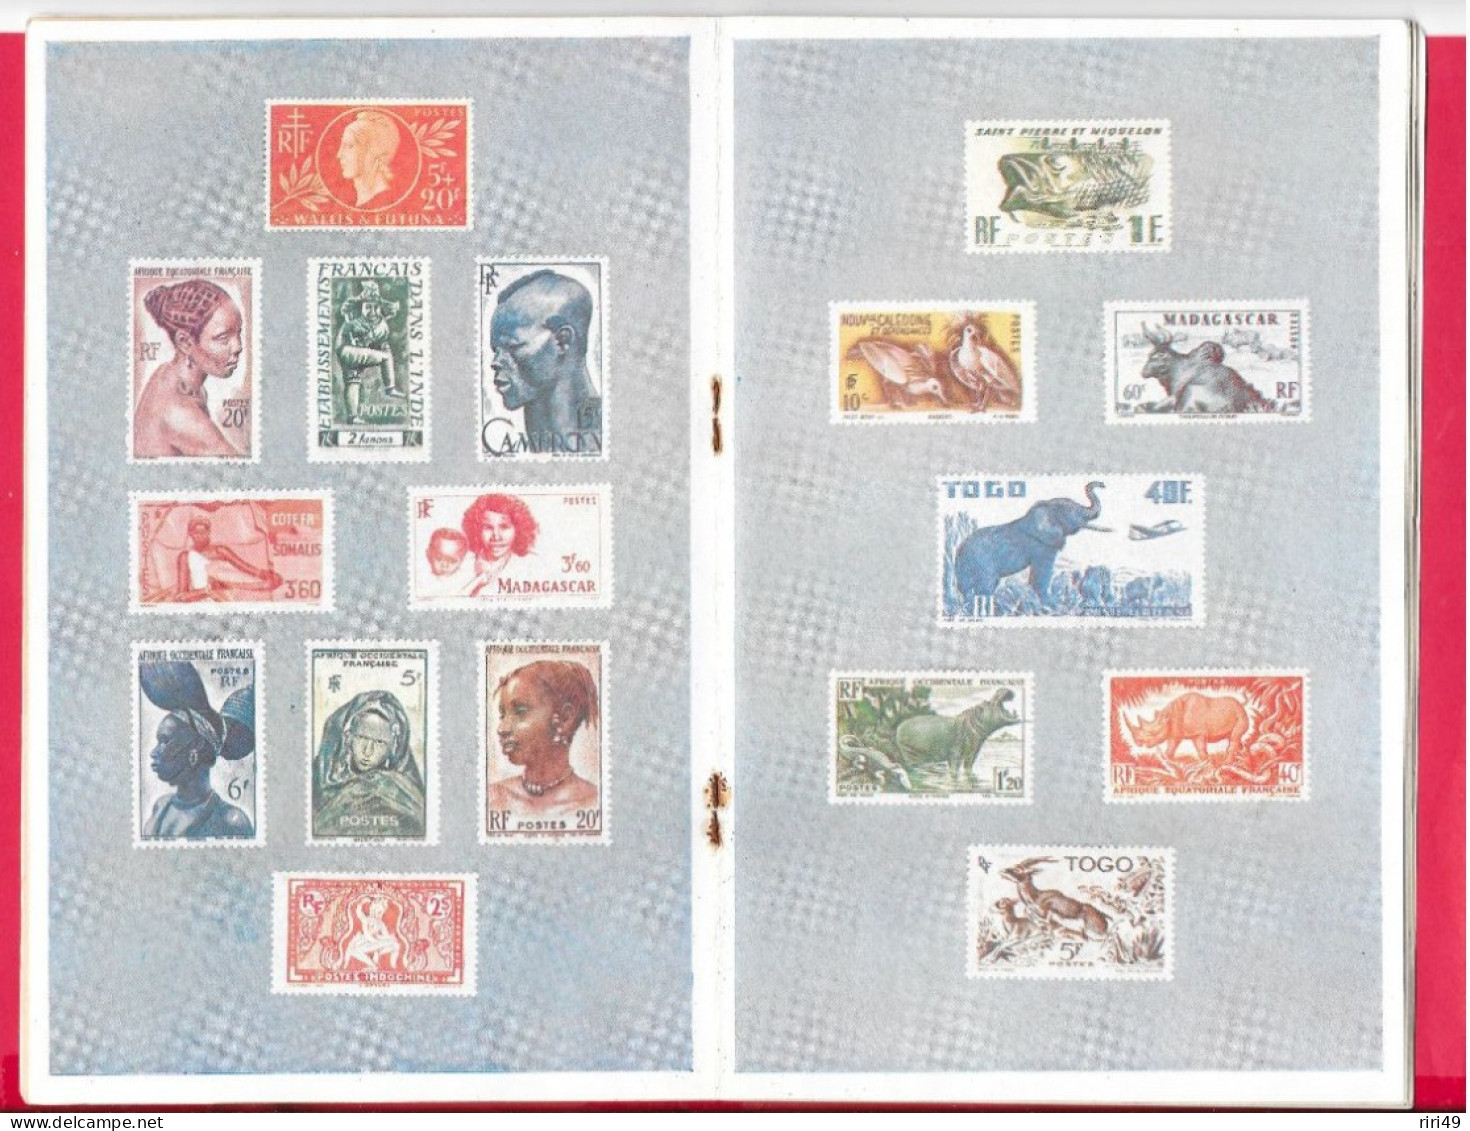 France, La France D'Outre-Mer Et La Philatélie, 1950 32pages, 13.5*24cm VOIR SCANNES 65 GR - Philately And Postal History